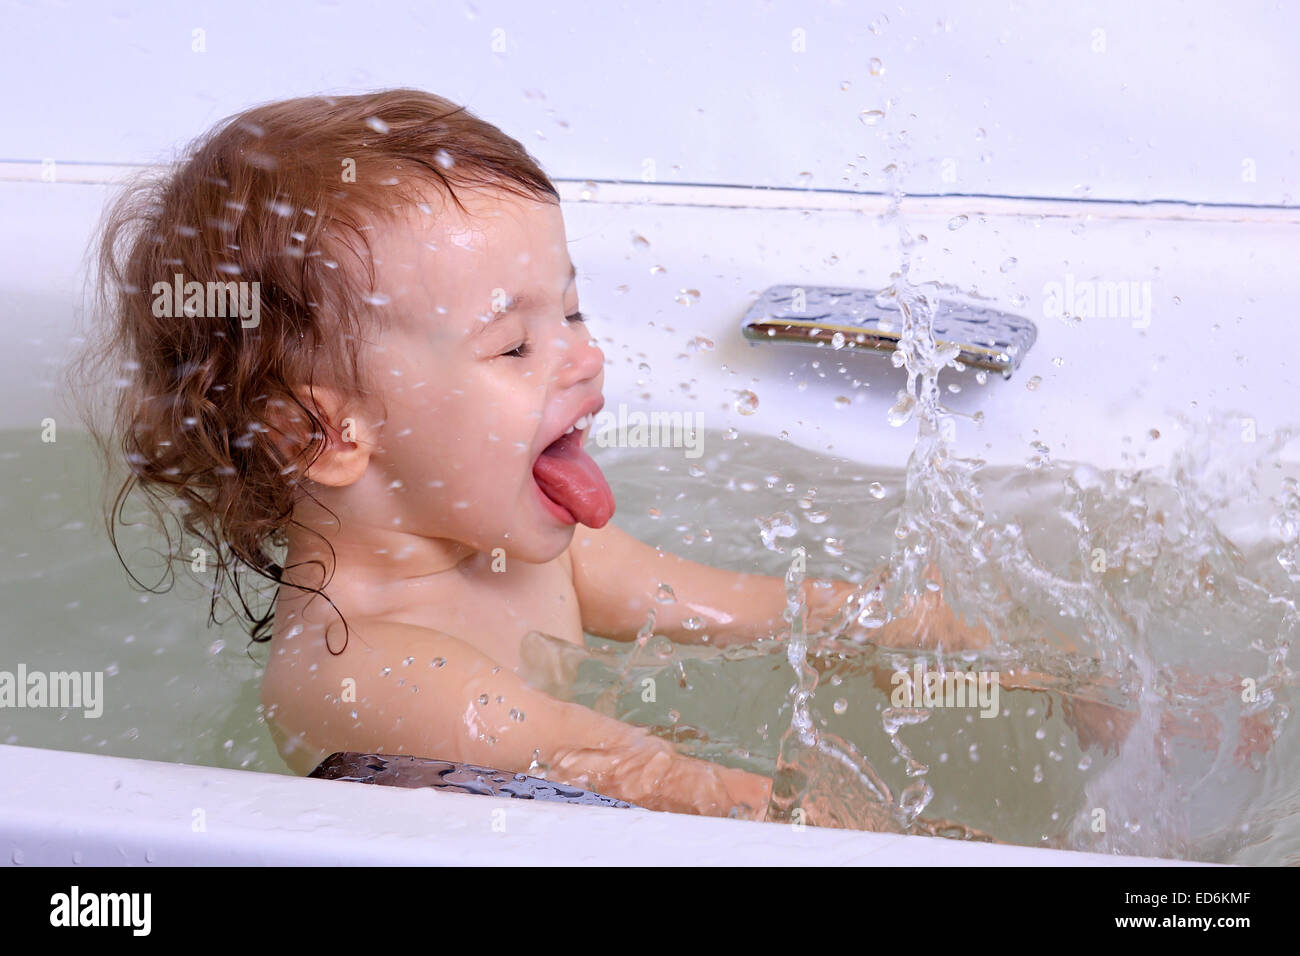 Дочка мылась в душе. Дочка моется перед школой. Голышом дочка в ванной купается. Доченька моется. Мальчик зовет купаться фотография.